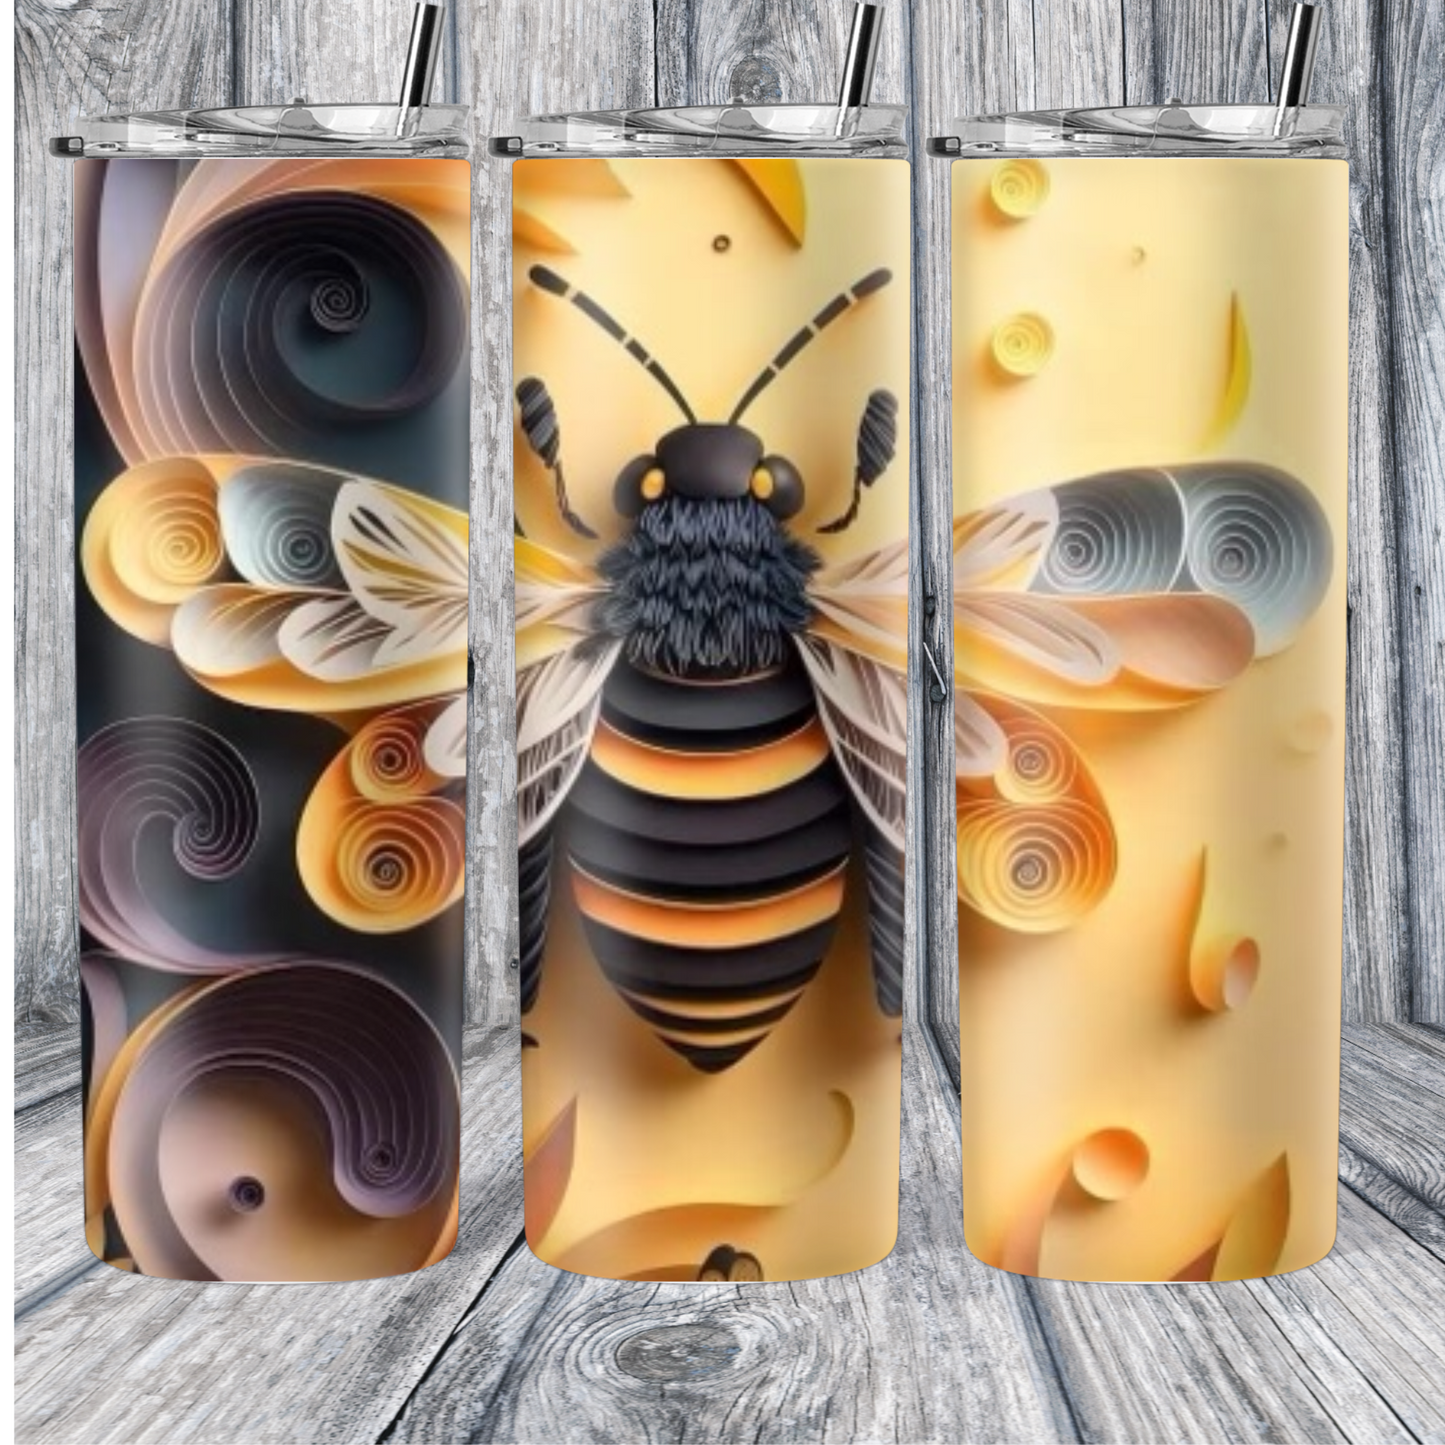 3D Bee